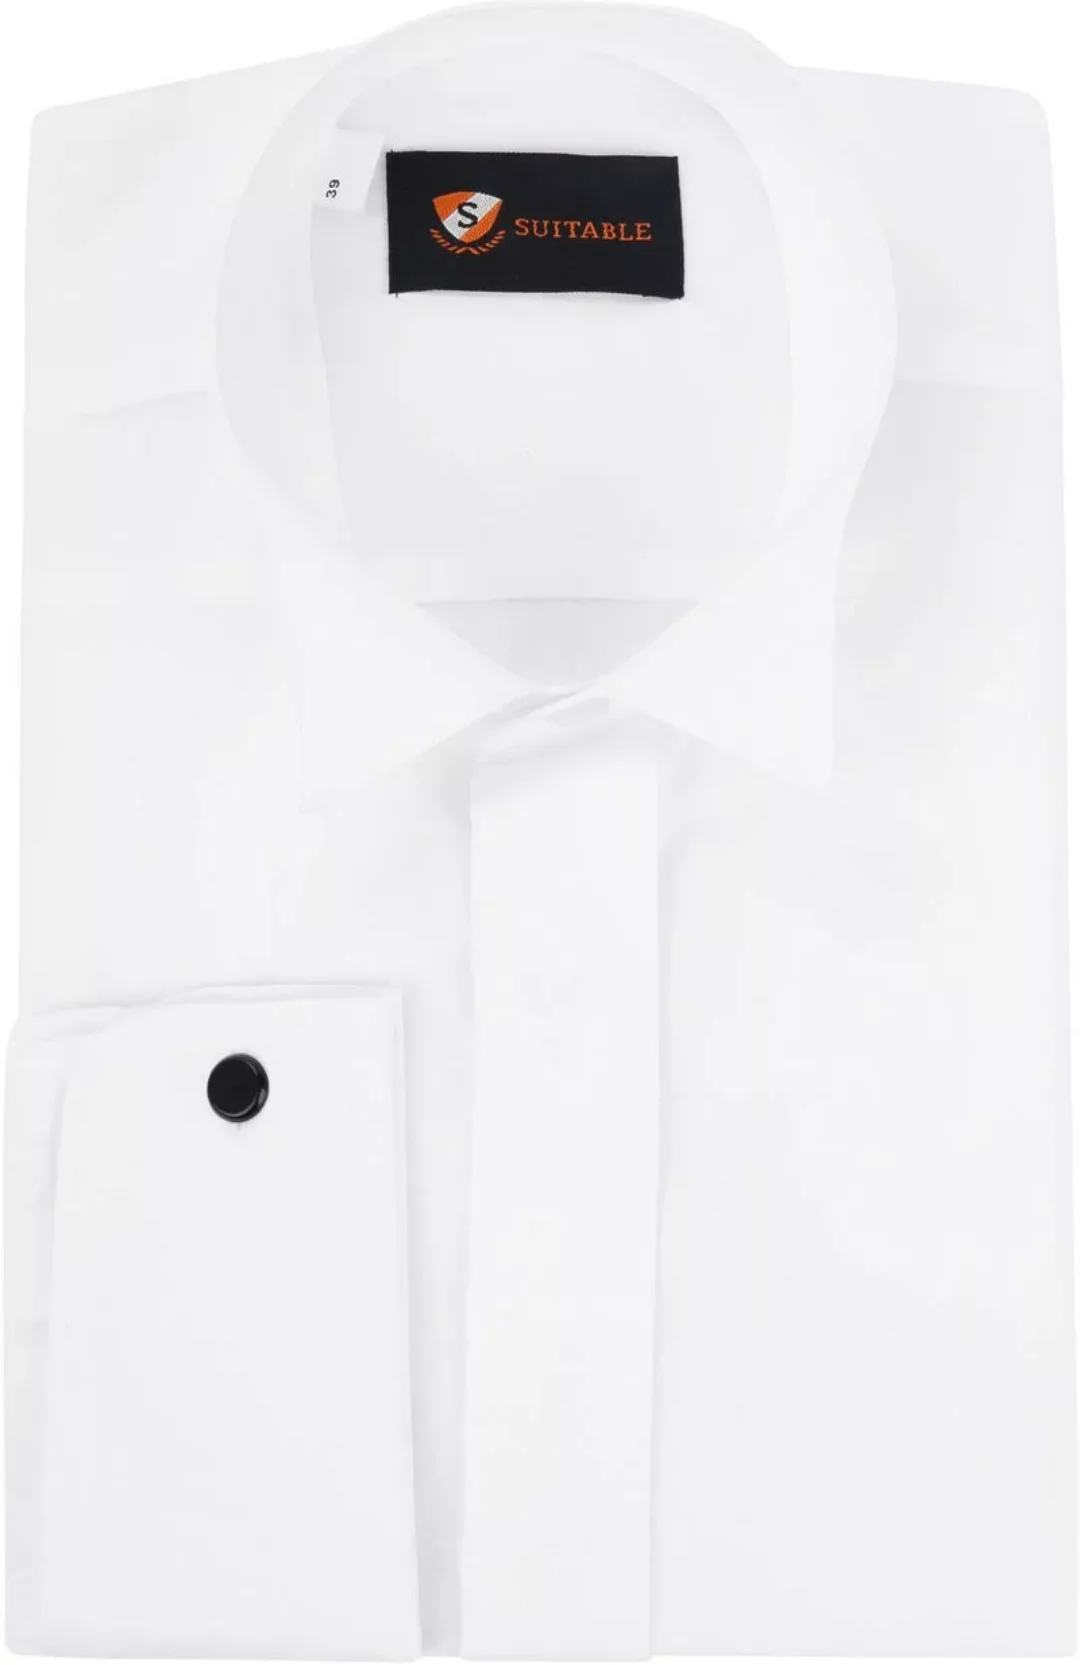 Suitable Hemd Weiß Plissiert - Größe 38 günstig online kaufen